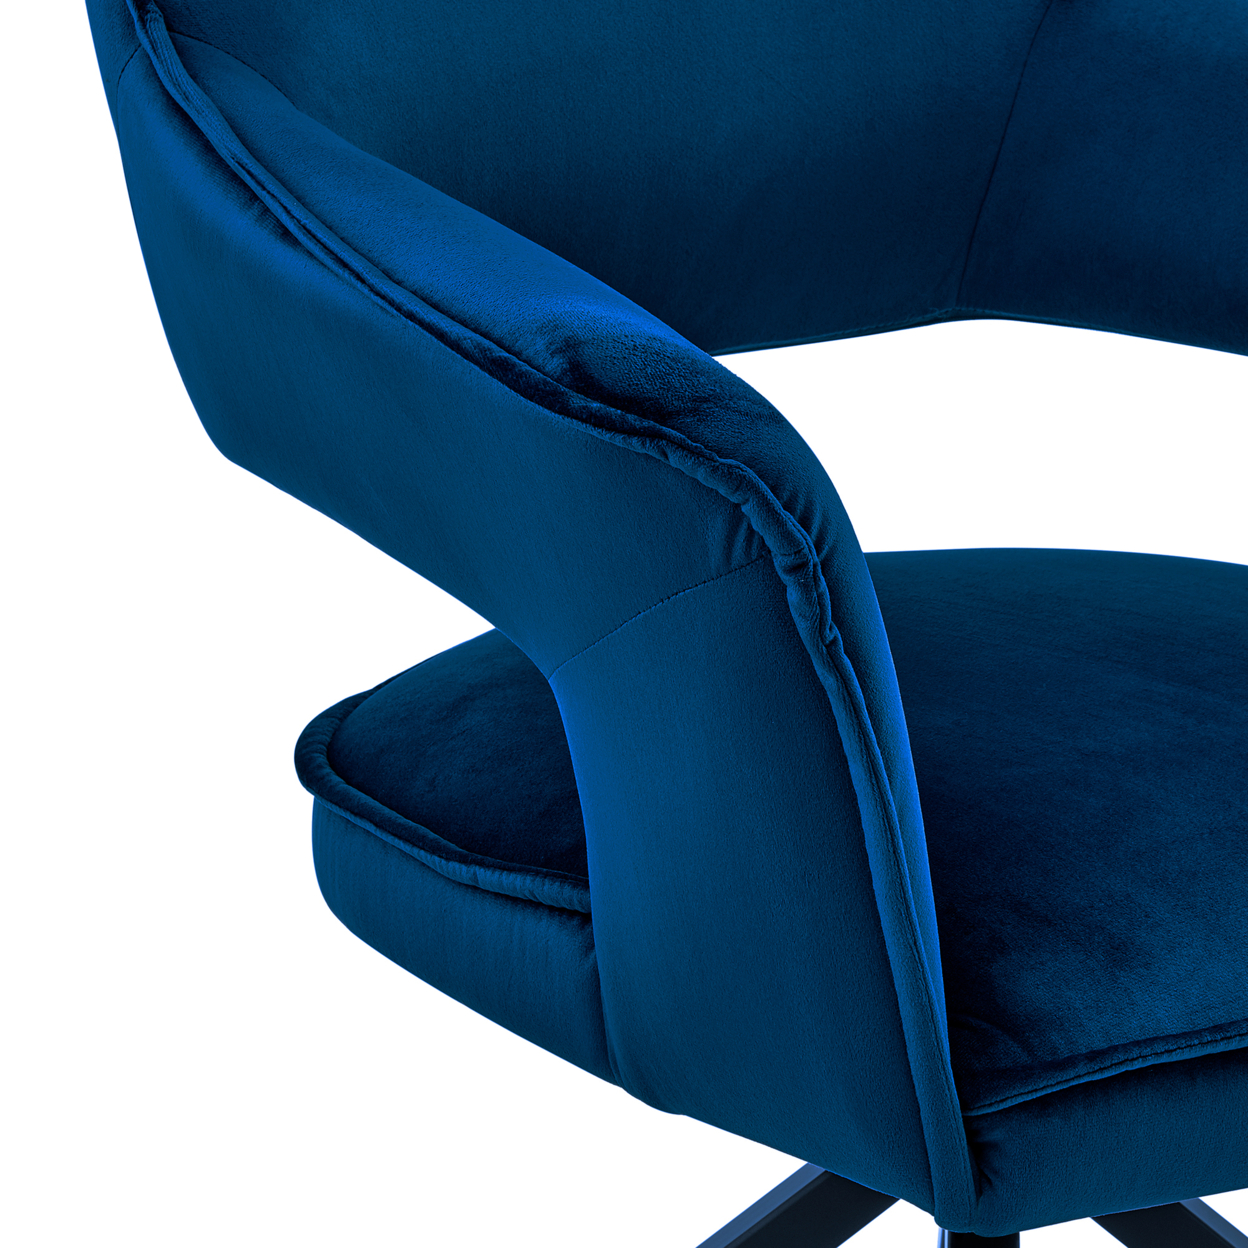 Velvet Upholstered Contemporary Accent Chair, Black And Blue- Saltoro Sherpi